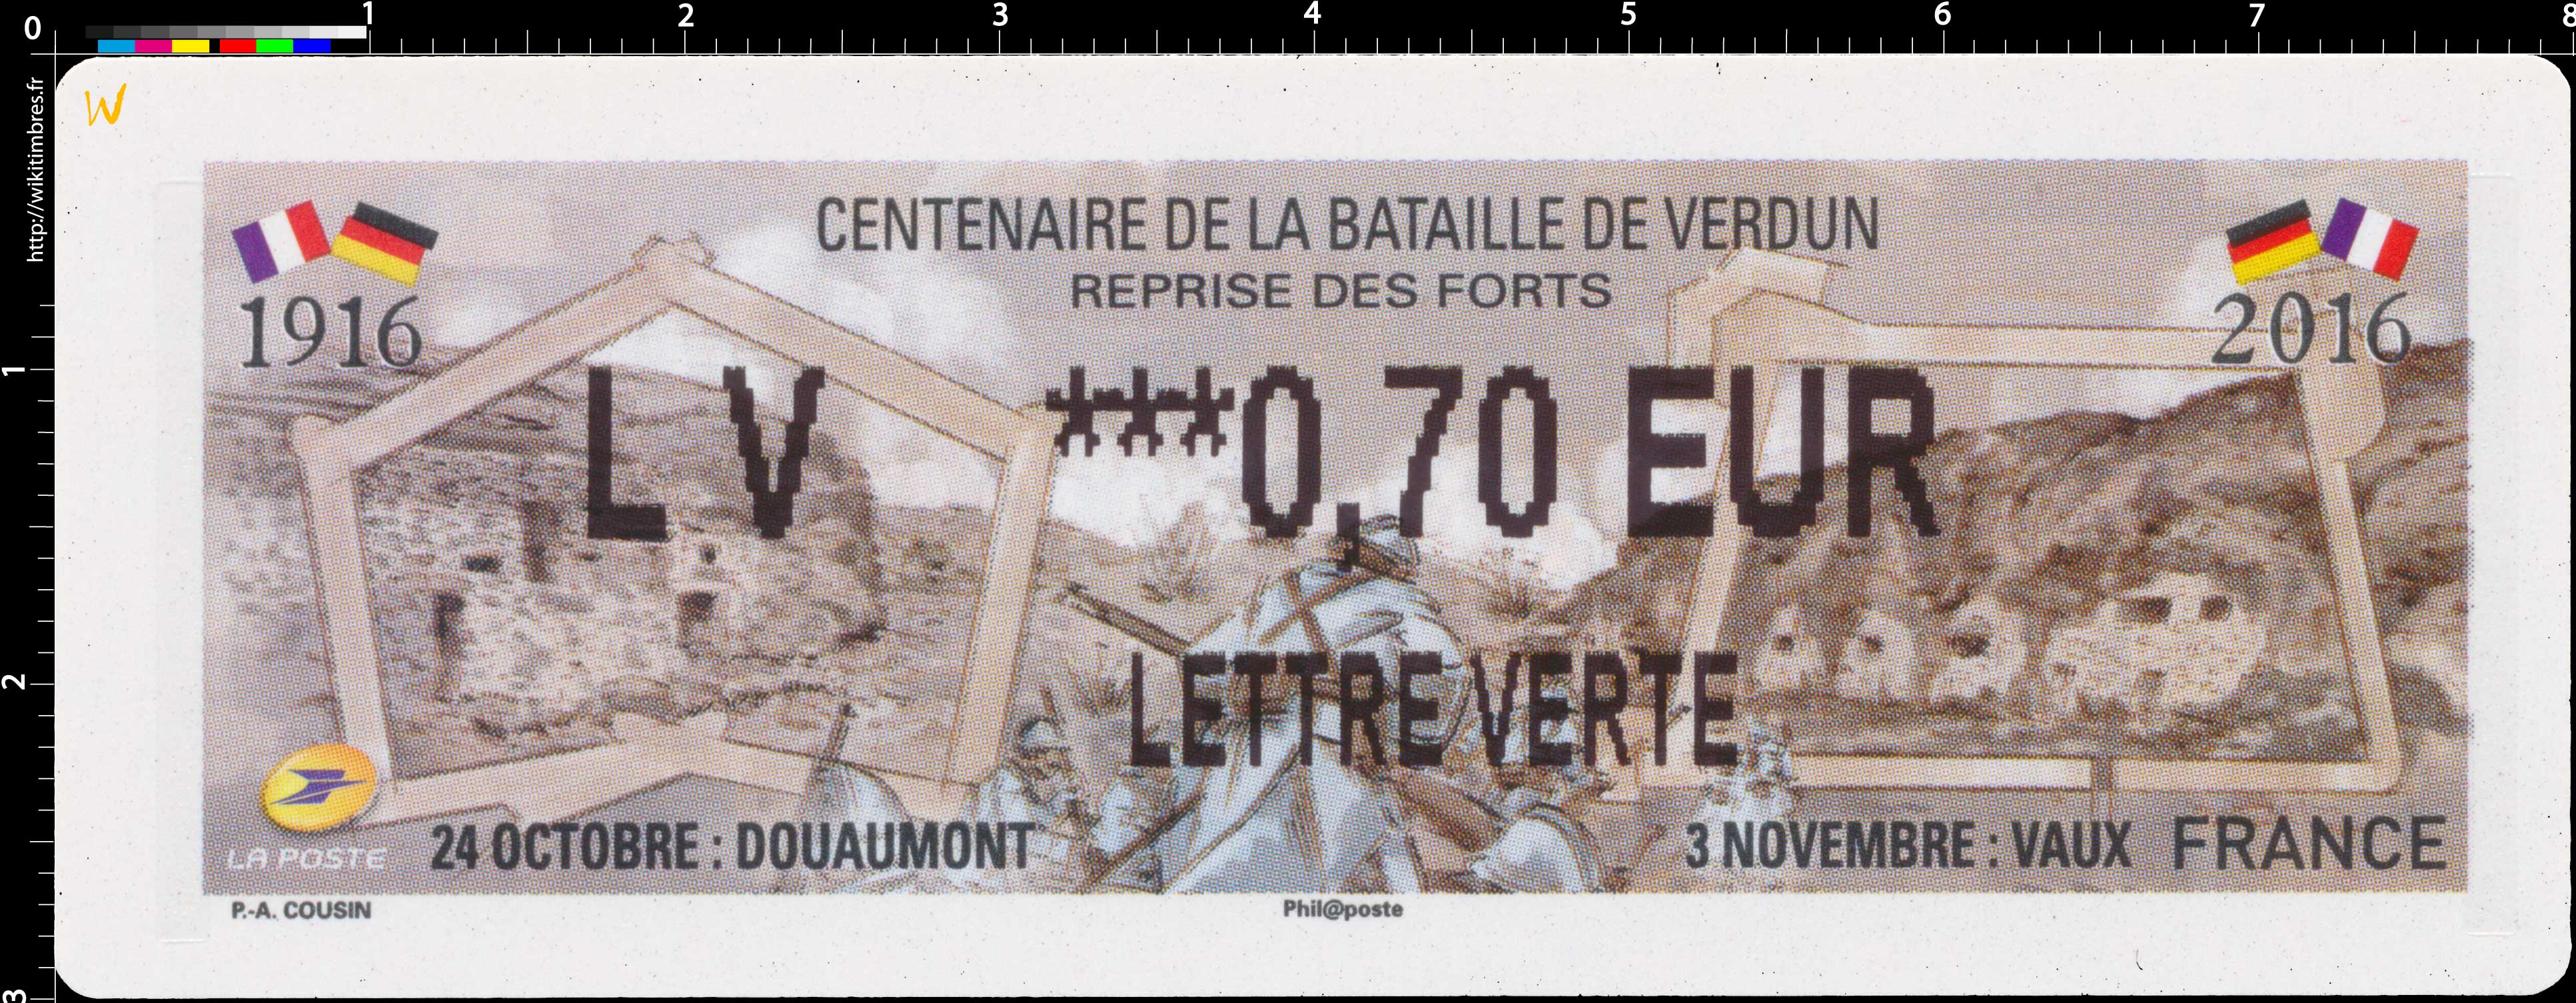 2016 Centenaire de la bataille de Verdun - reprise des forts